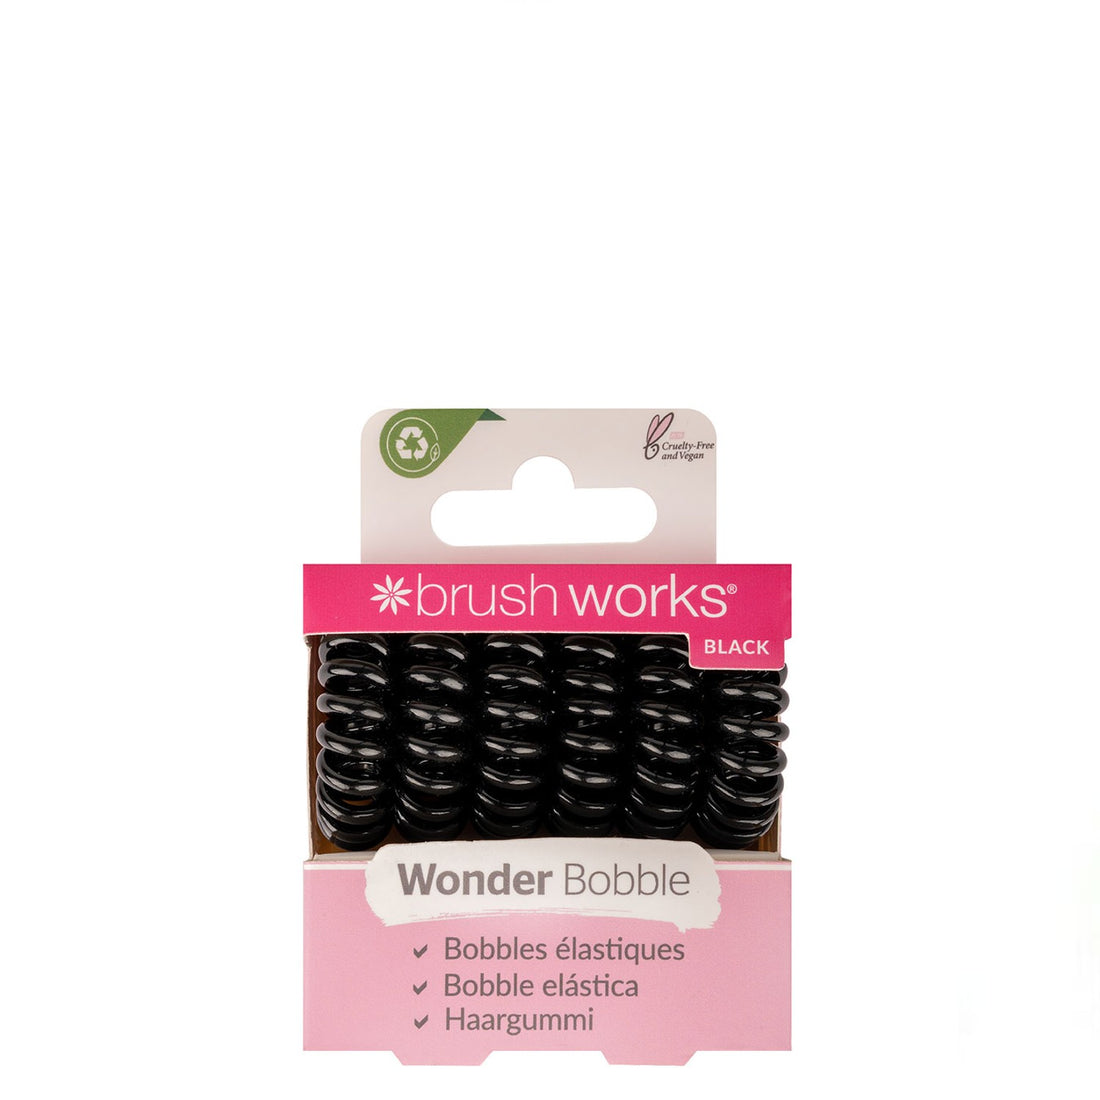 Brushworks Wonder Bobble - 6 Pack